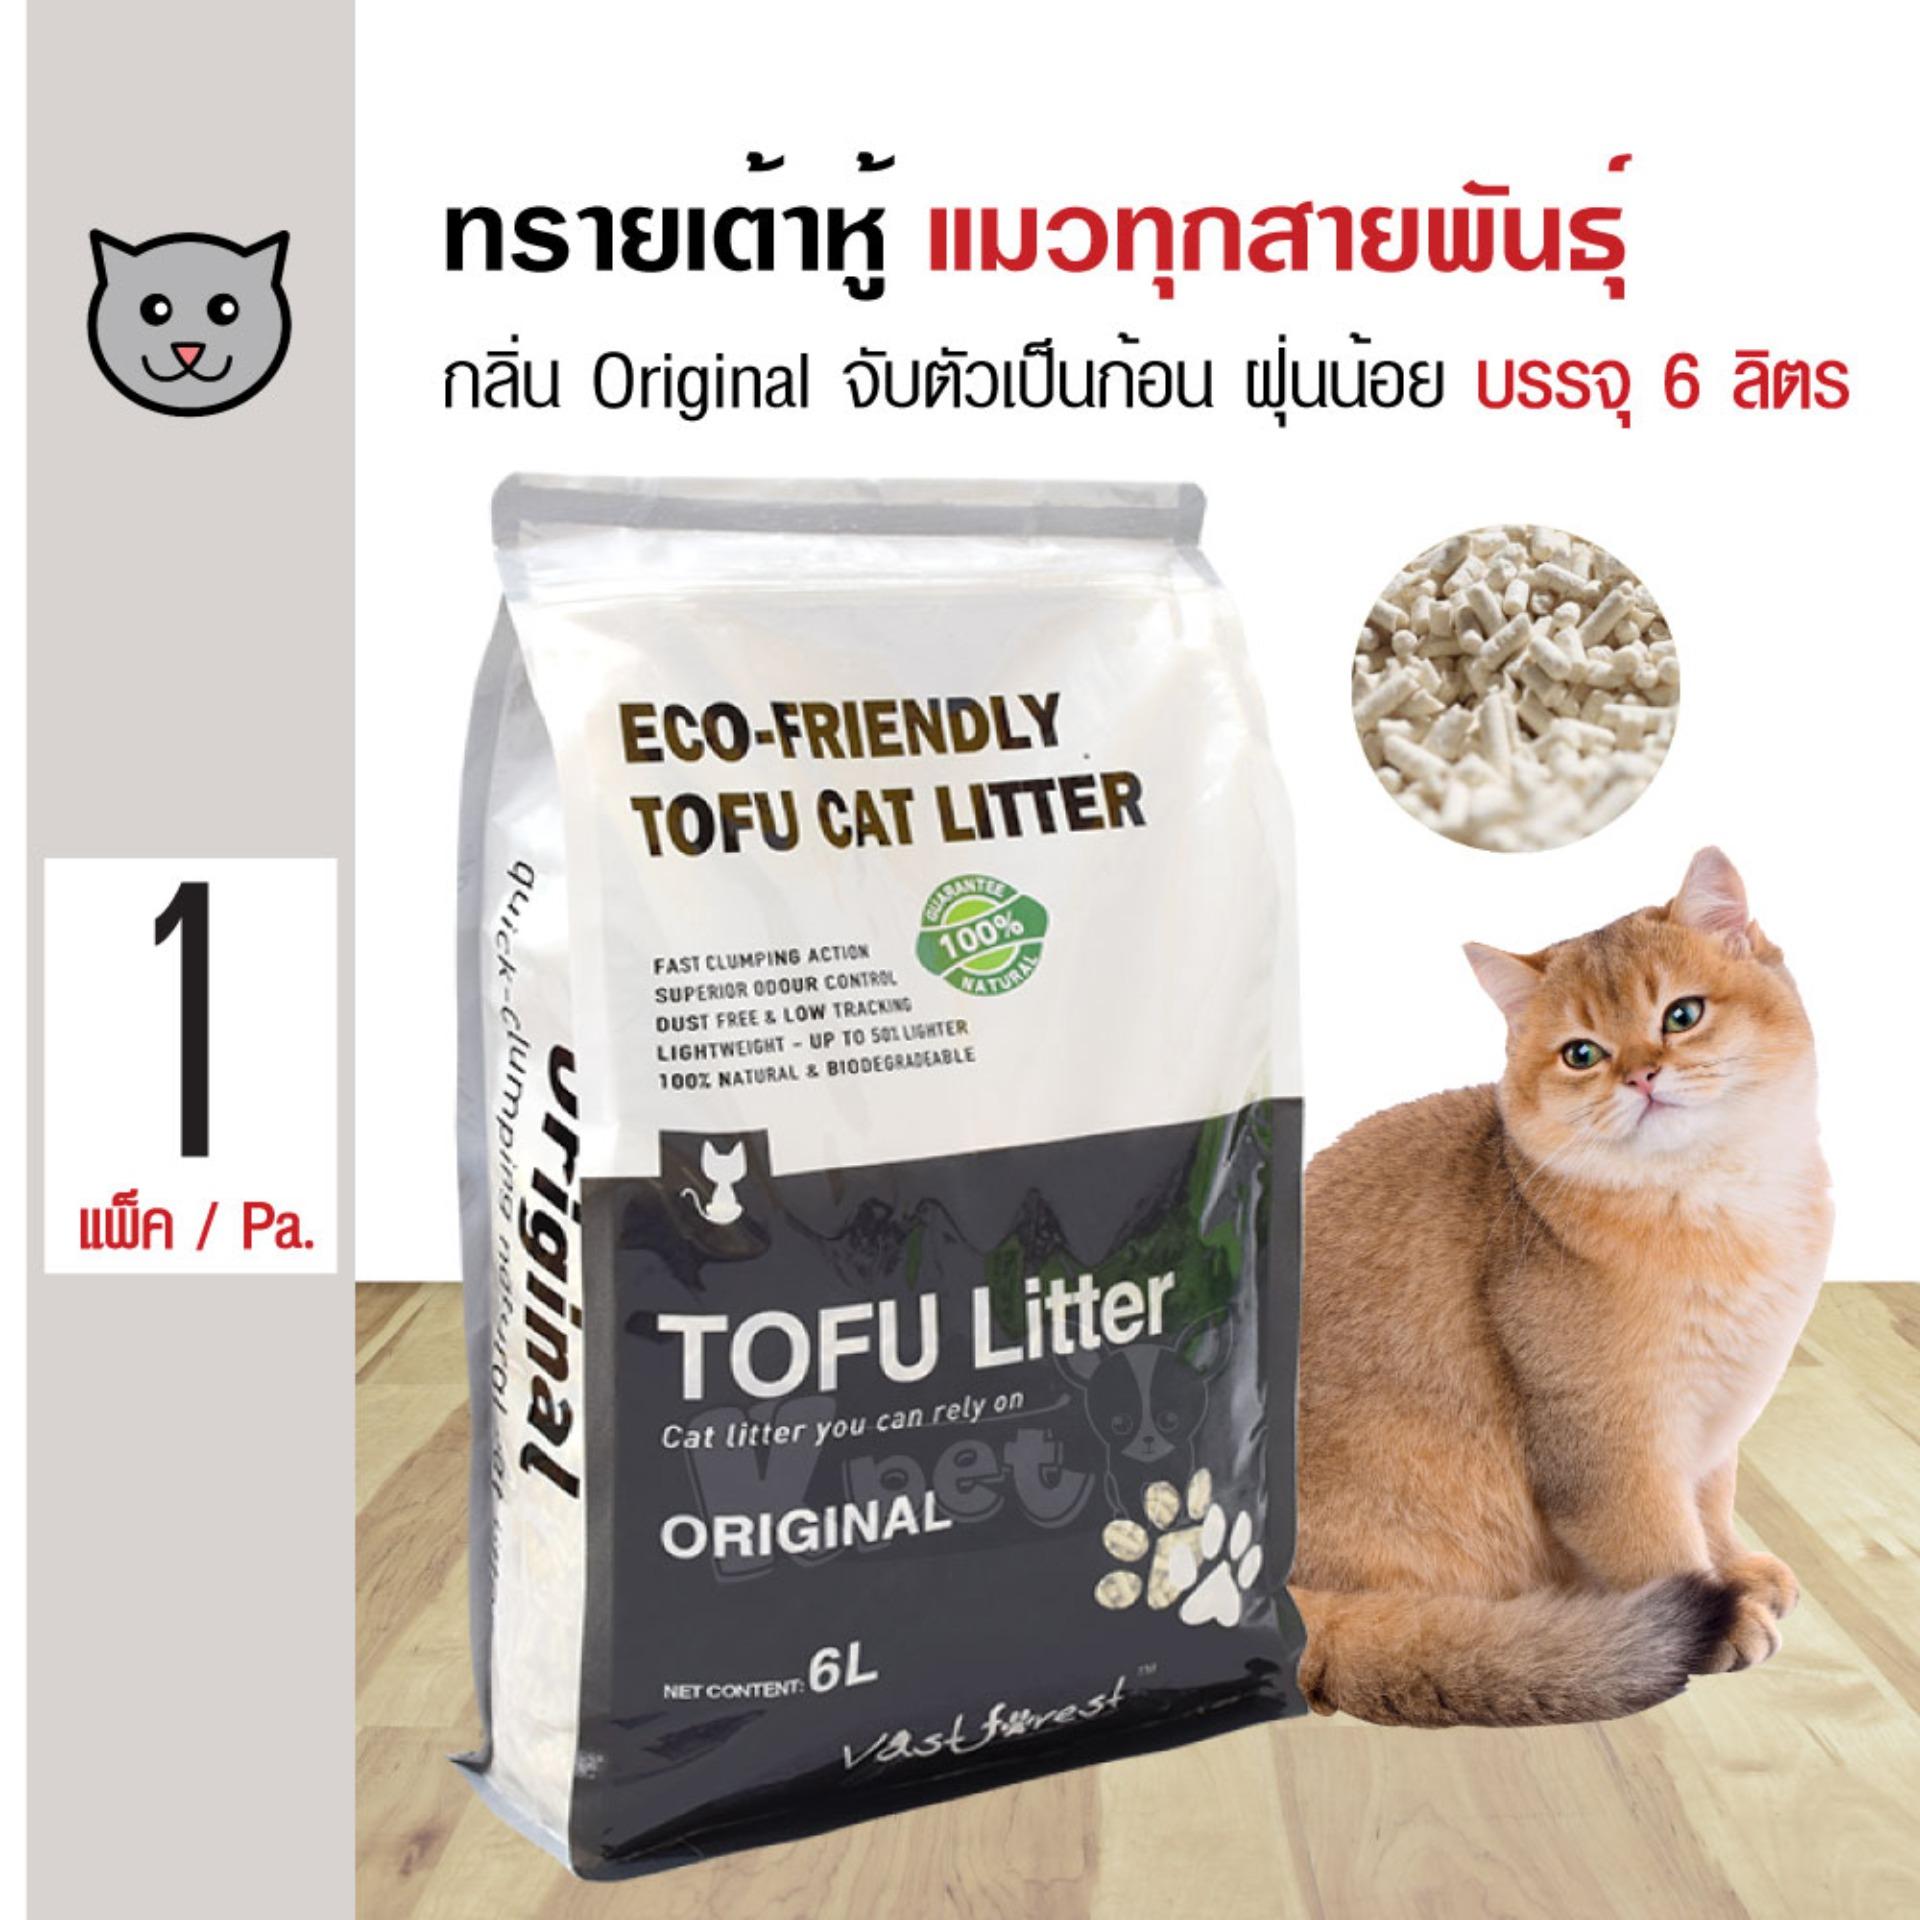 ราคา Tofu Cat Litter ทรายแมวเต้าหู้ ทรายธรรมชาติ กลิ่นธรรมชาติ ฝุ่นน้อย